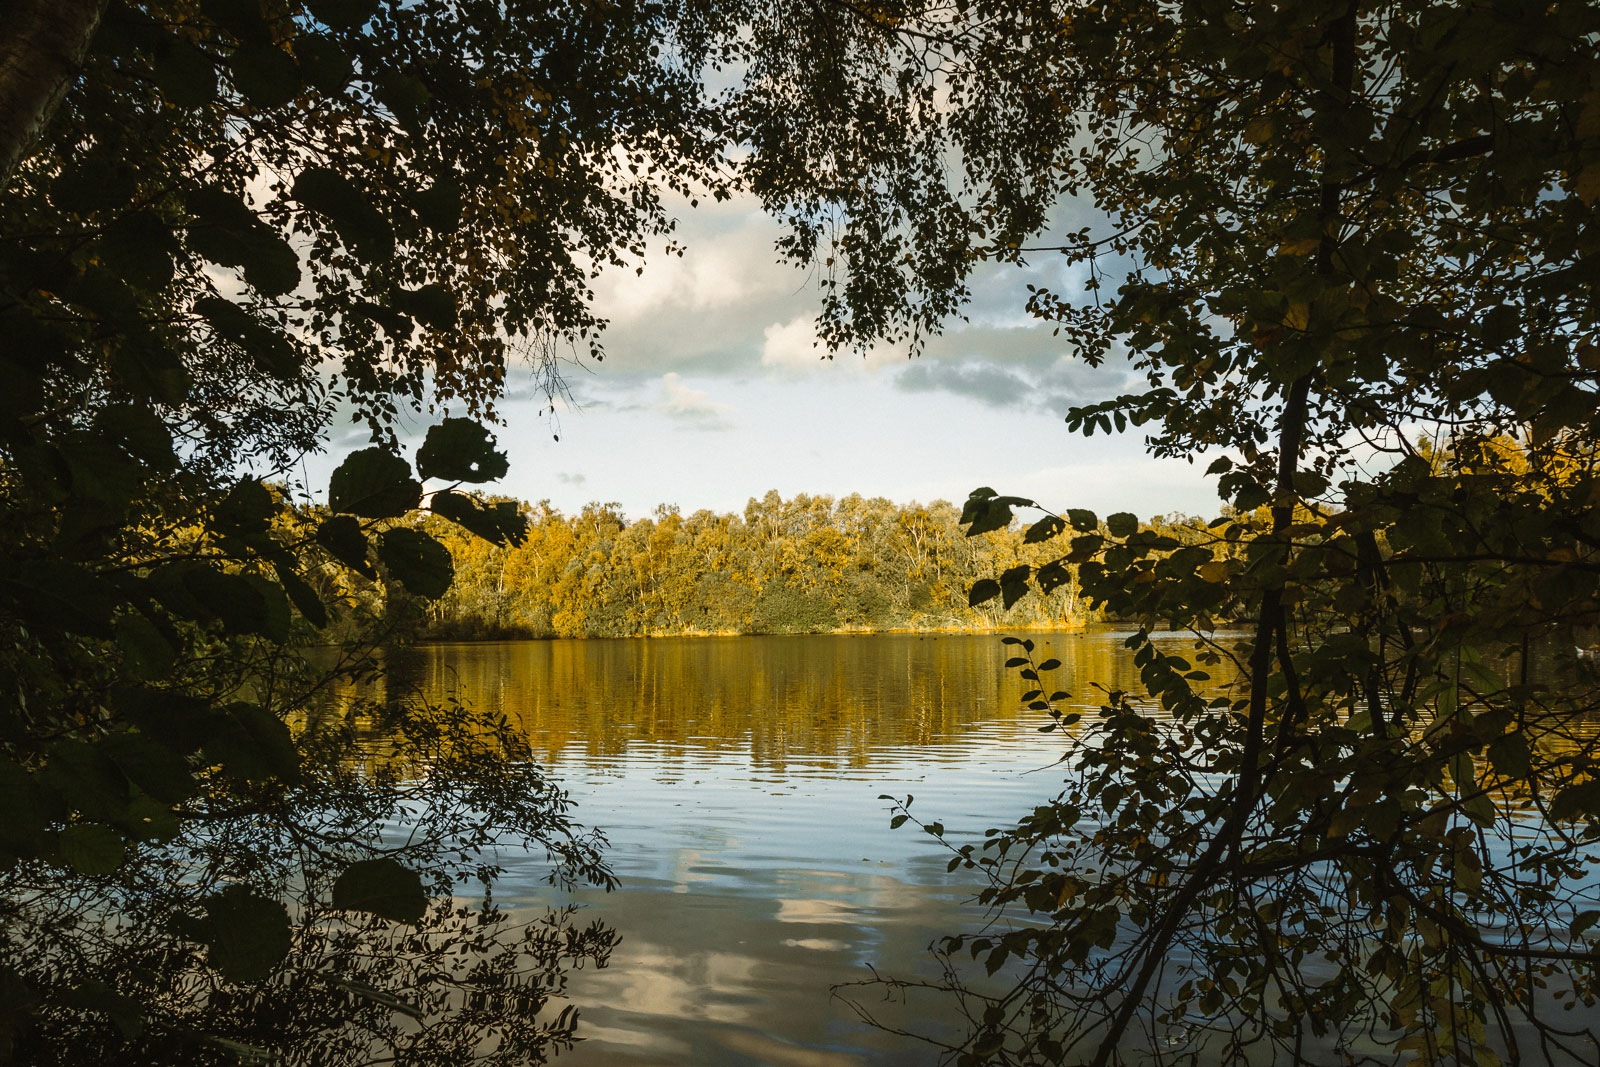 Water Reservoir in Holme Fen behind trees